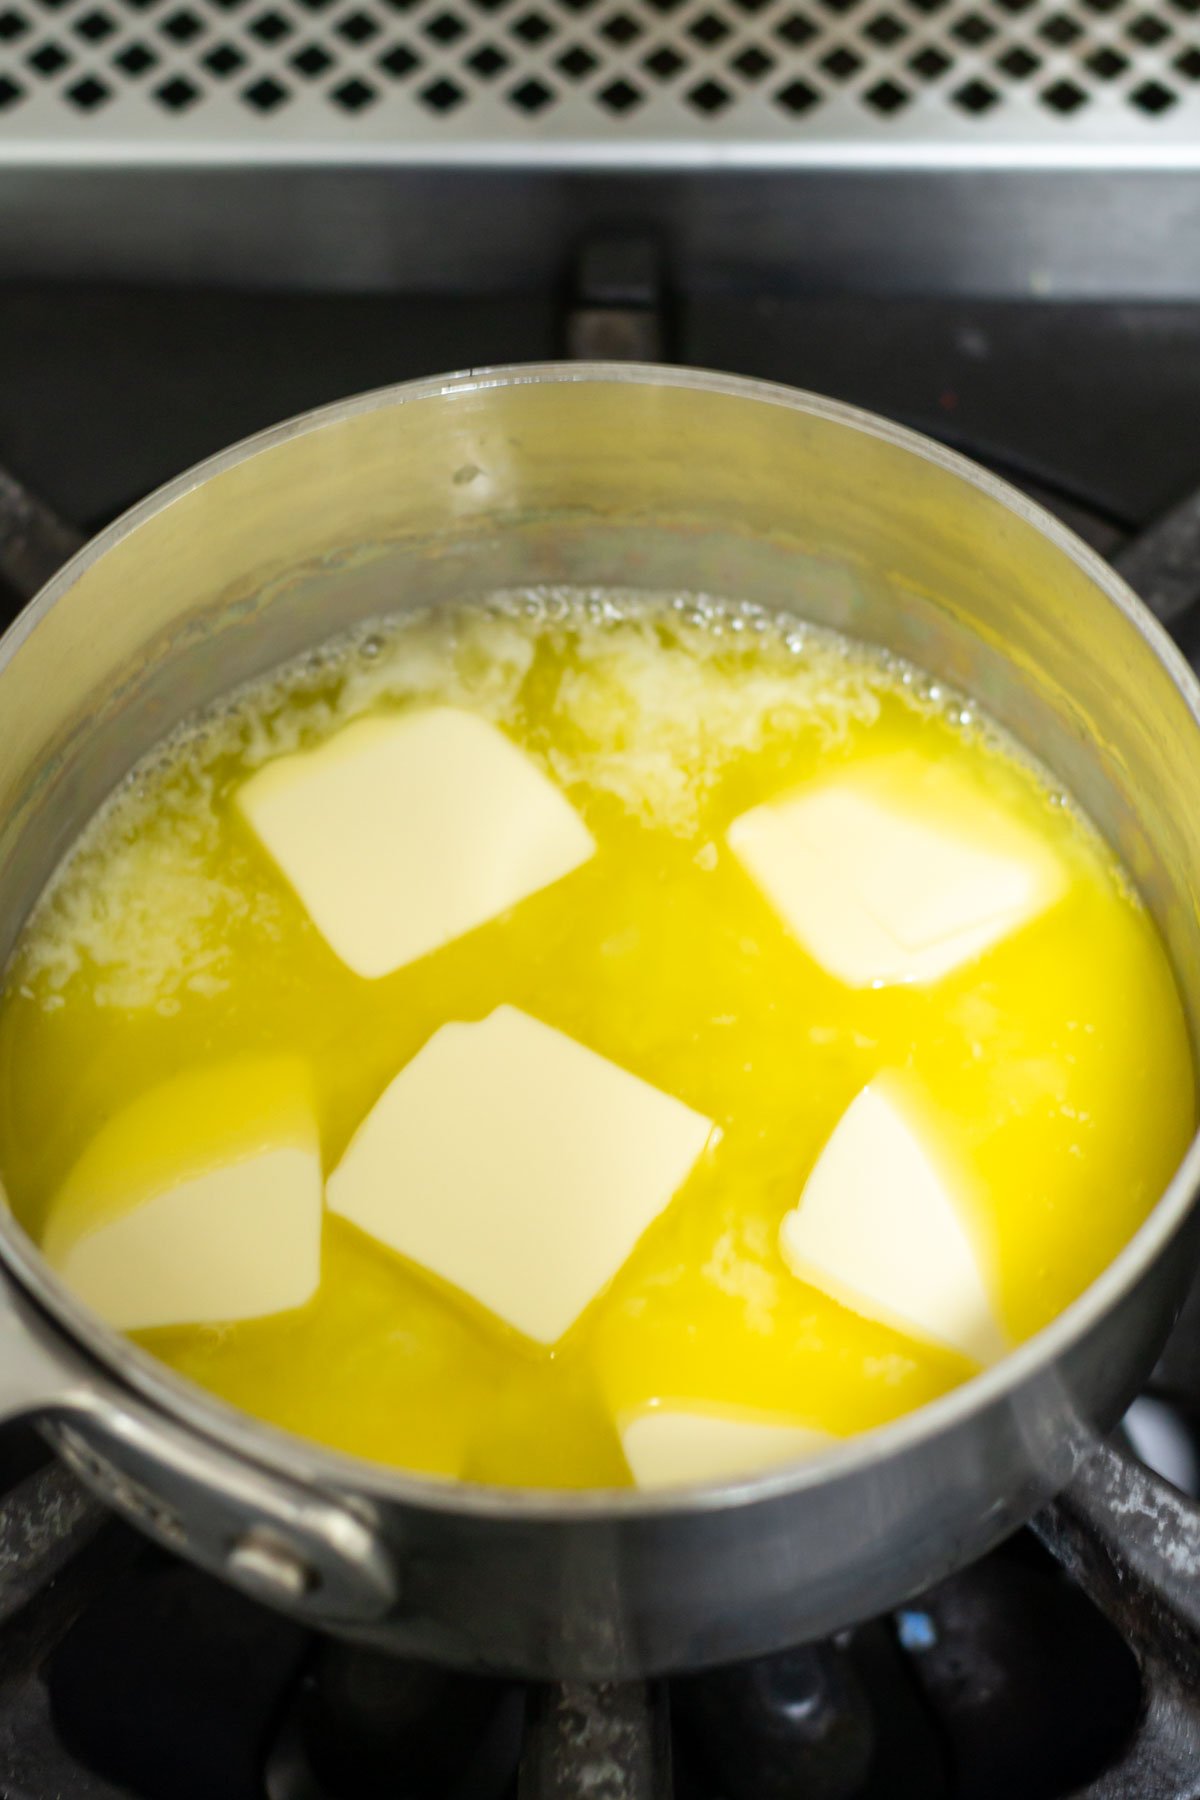 butter cubes melting in a saucepan